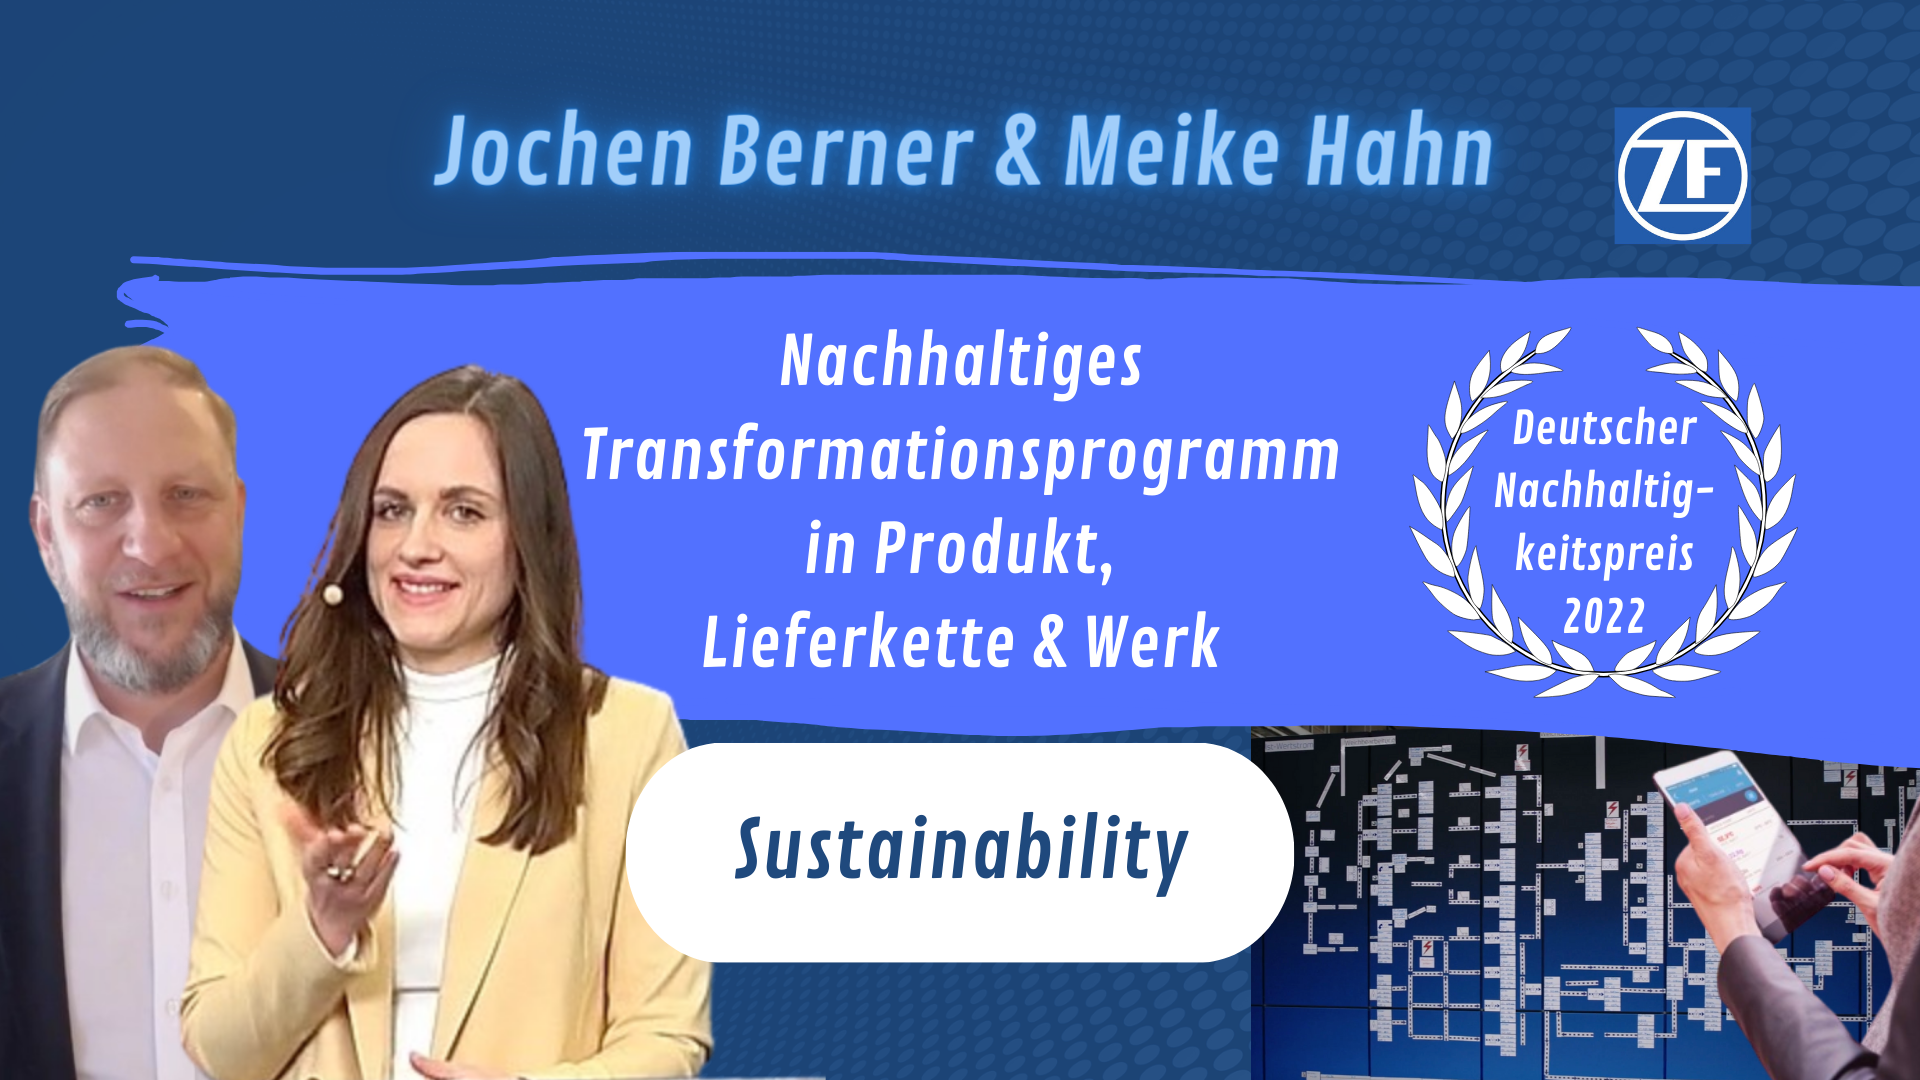 GREEN - Sustainability with Jochen Berner & Meike Hahn